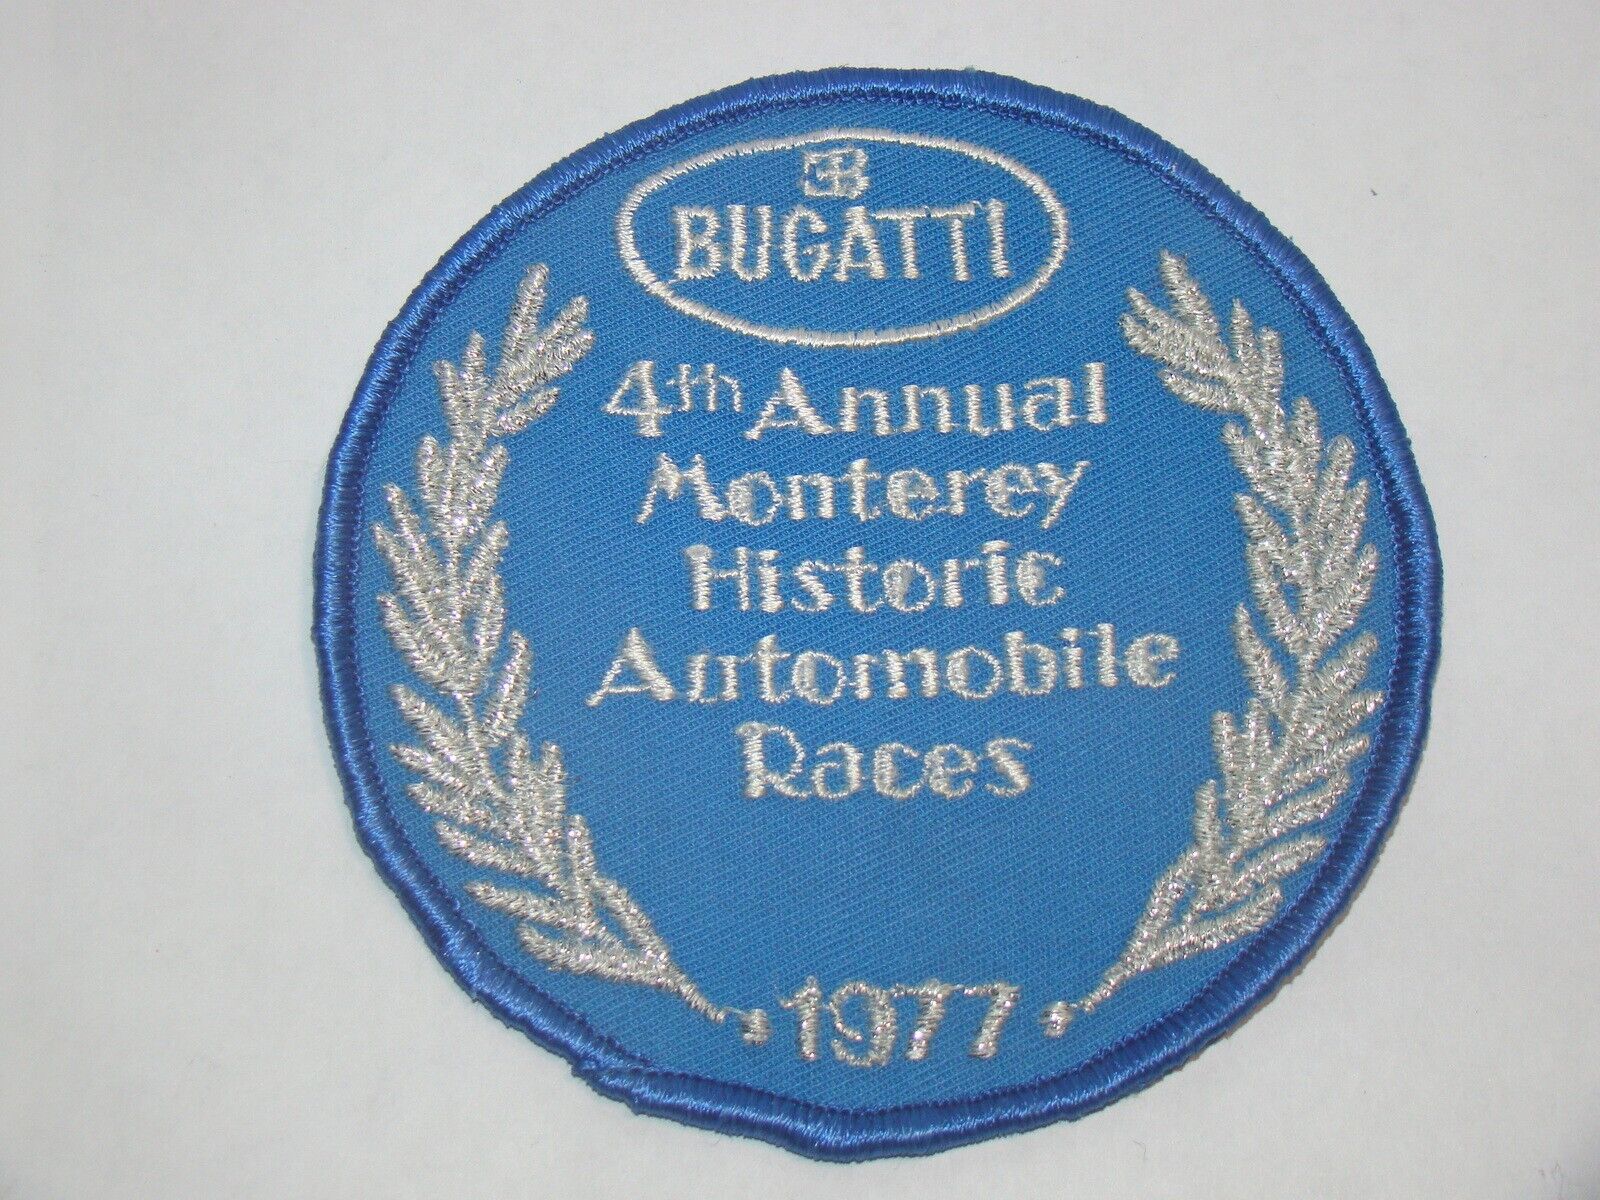 (1977) BUGATTI 4th Annual Monterey Historic Automobile Race Patch